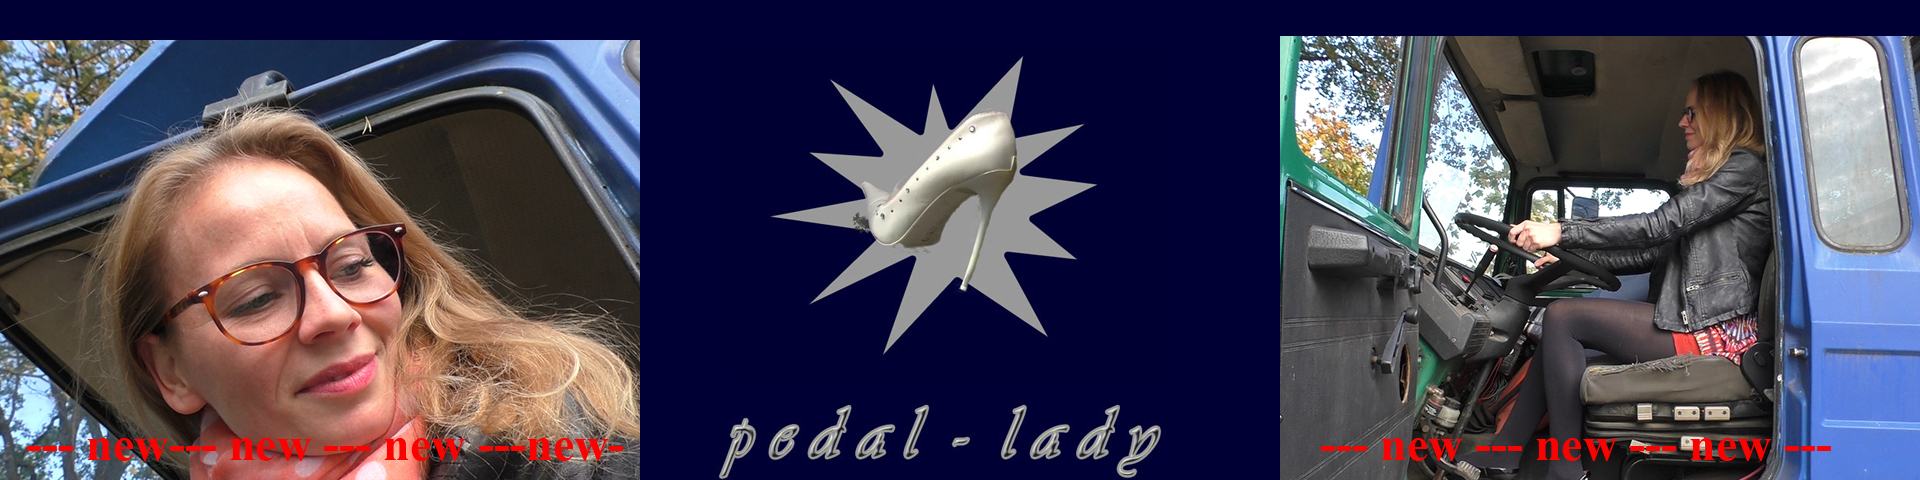 Existencia aire despreciar pedal-lady - Index